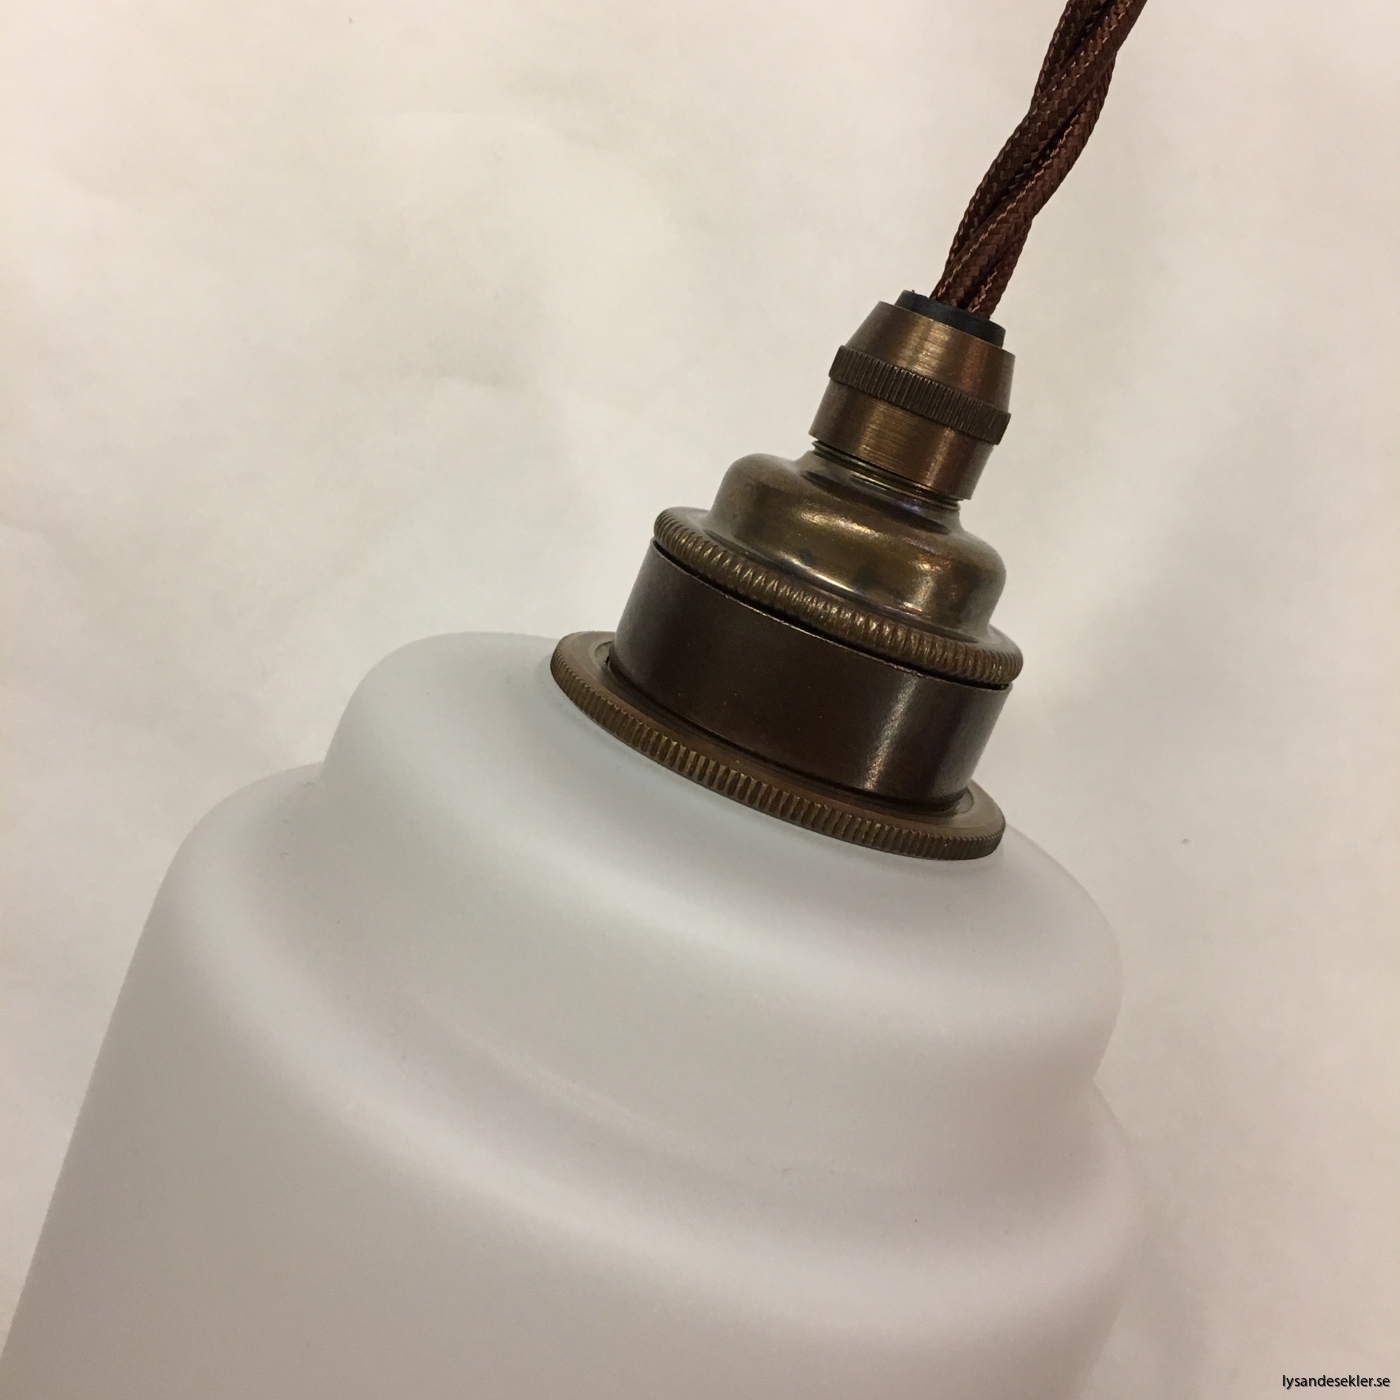 tygsladd textilssladd lampupphäng med 2 ringar utan skruvar för skärm eller glödlampa